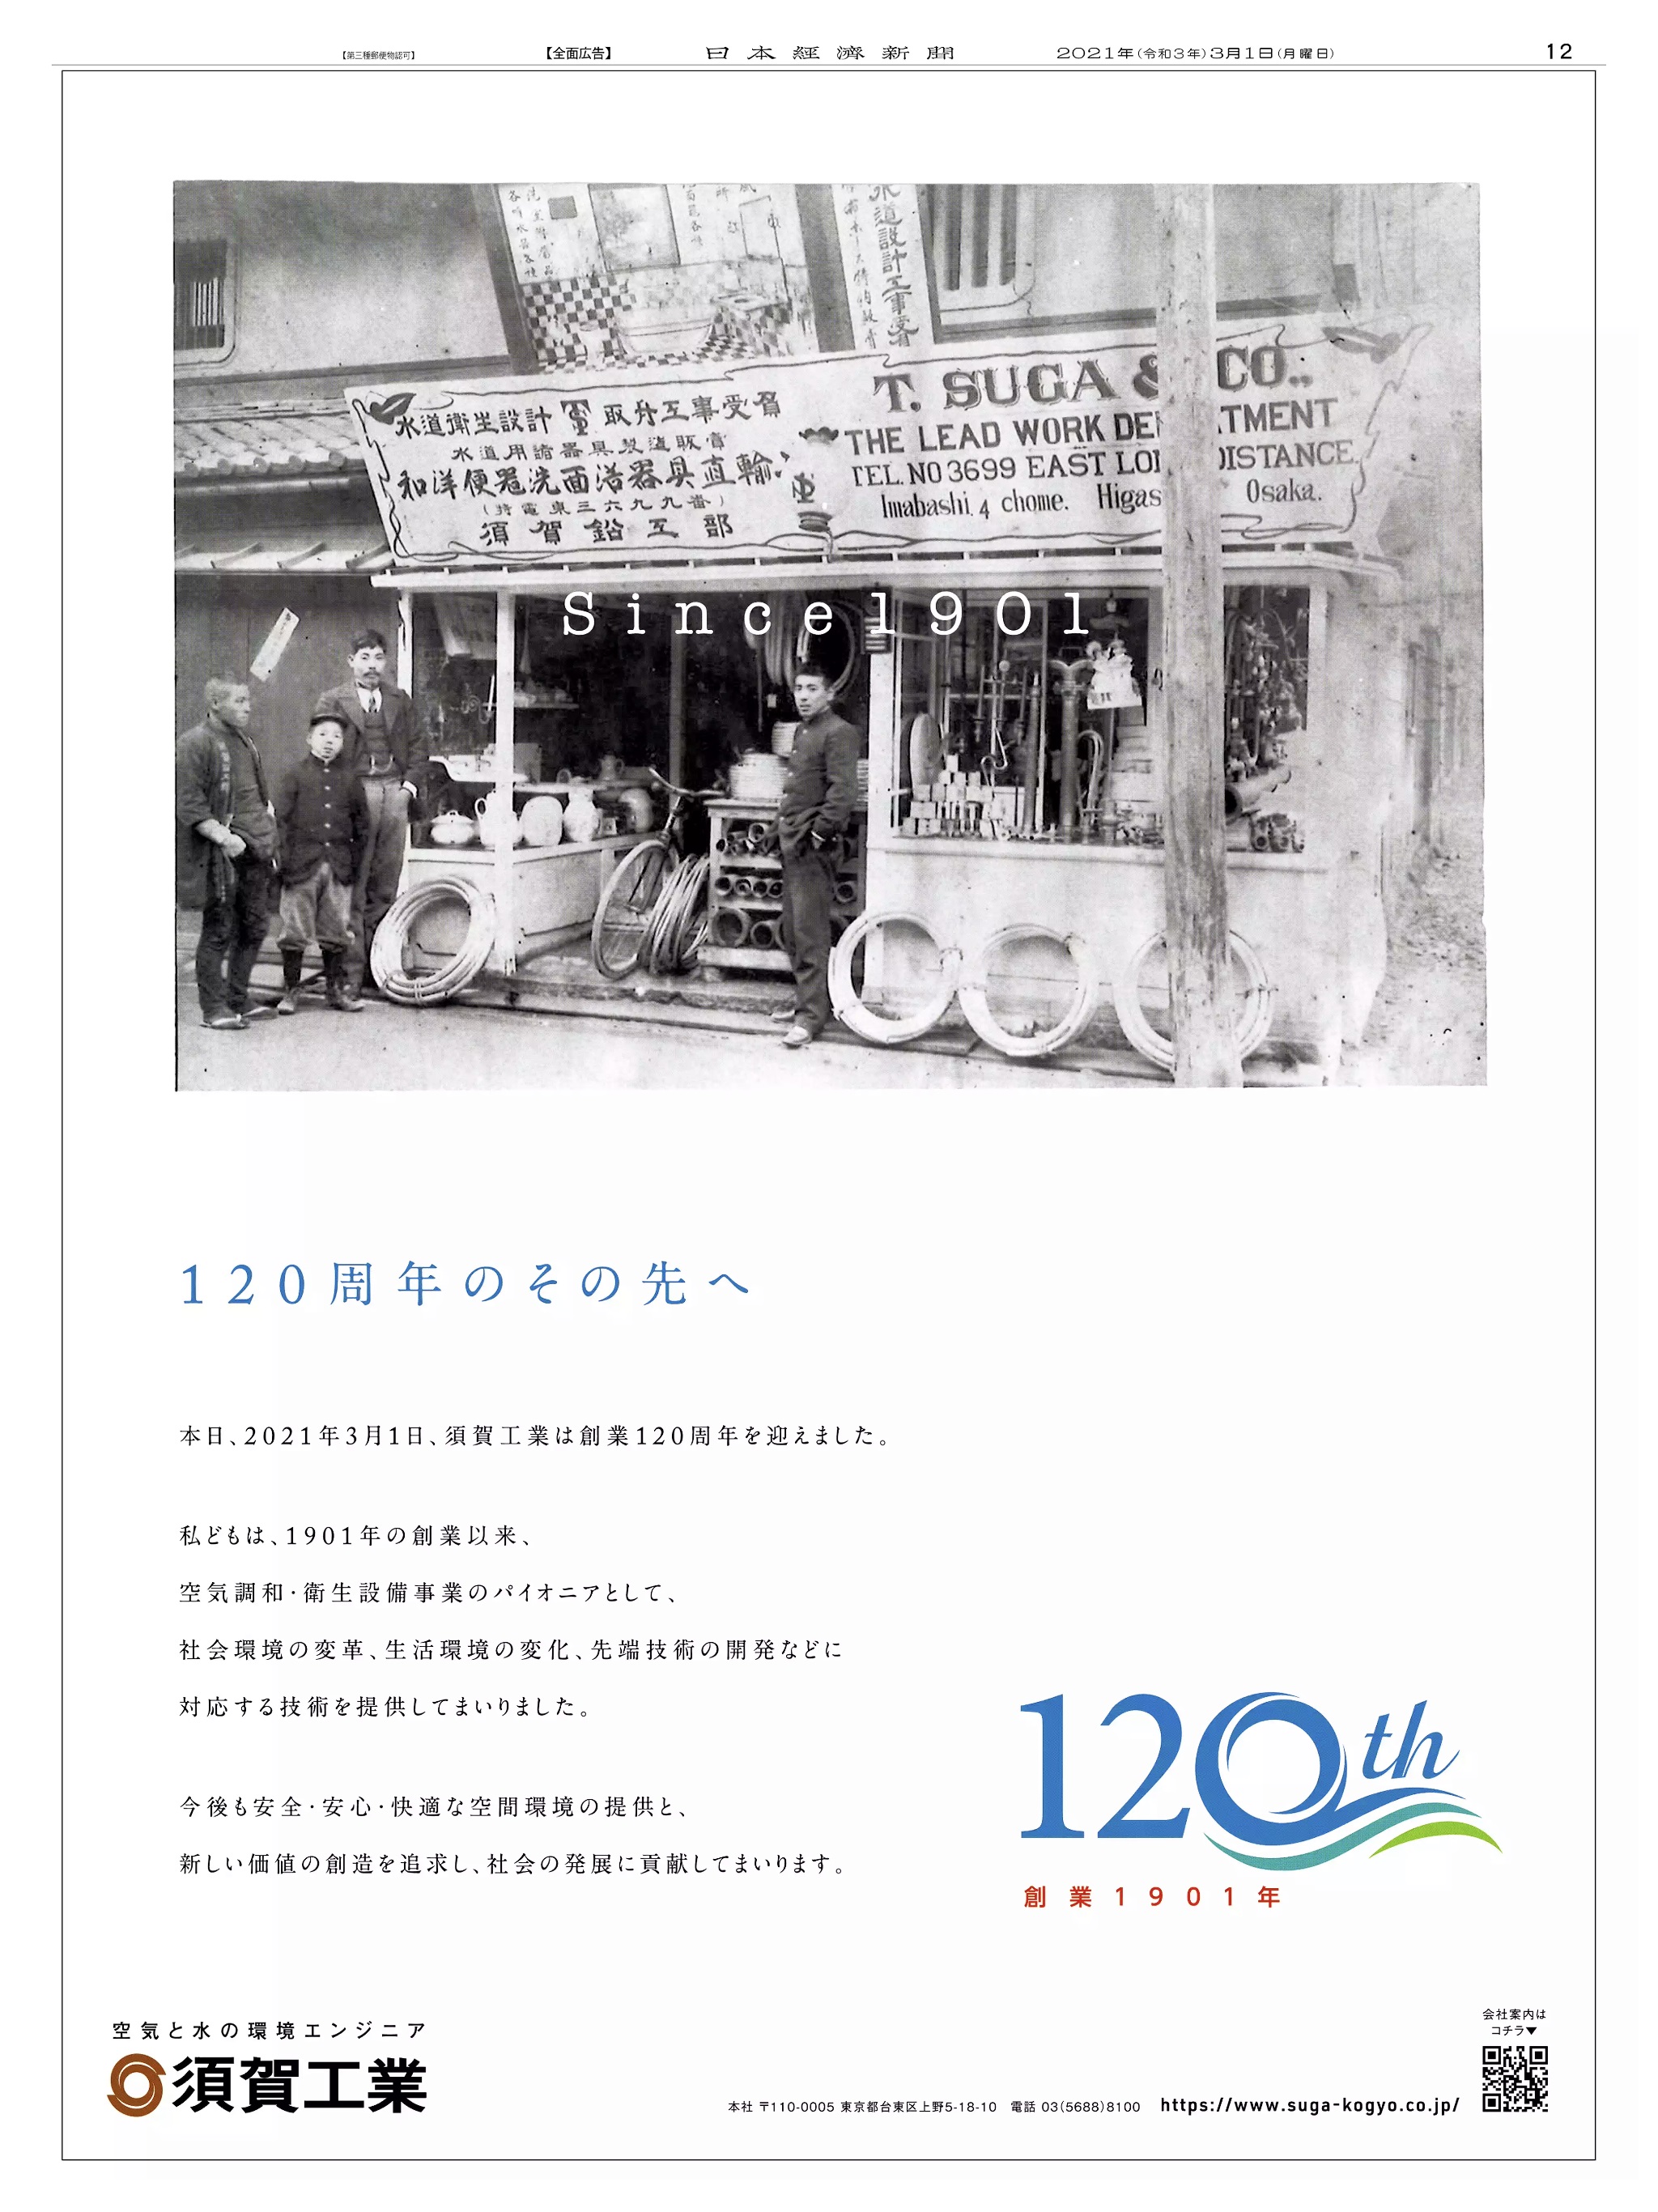 周年記念広告事例 「須賀工業 創業120周年」